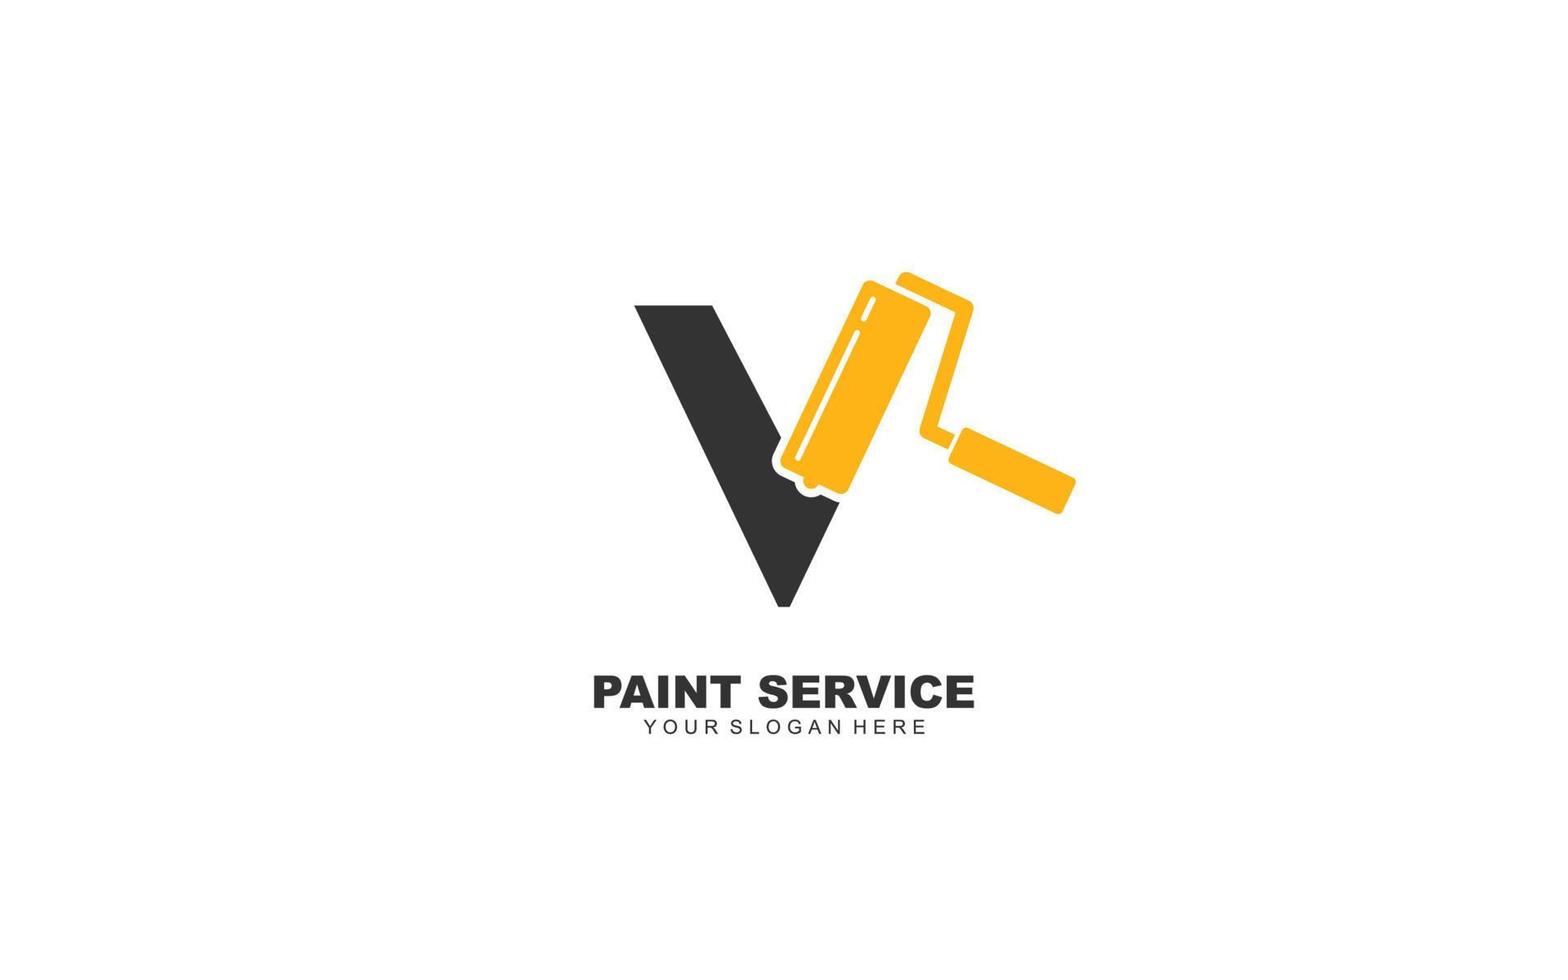 V PAINT logo design inspiration. Vector letter template design for brand.